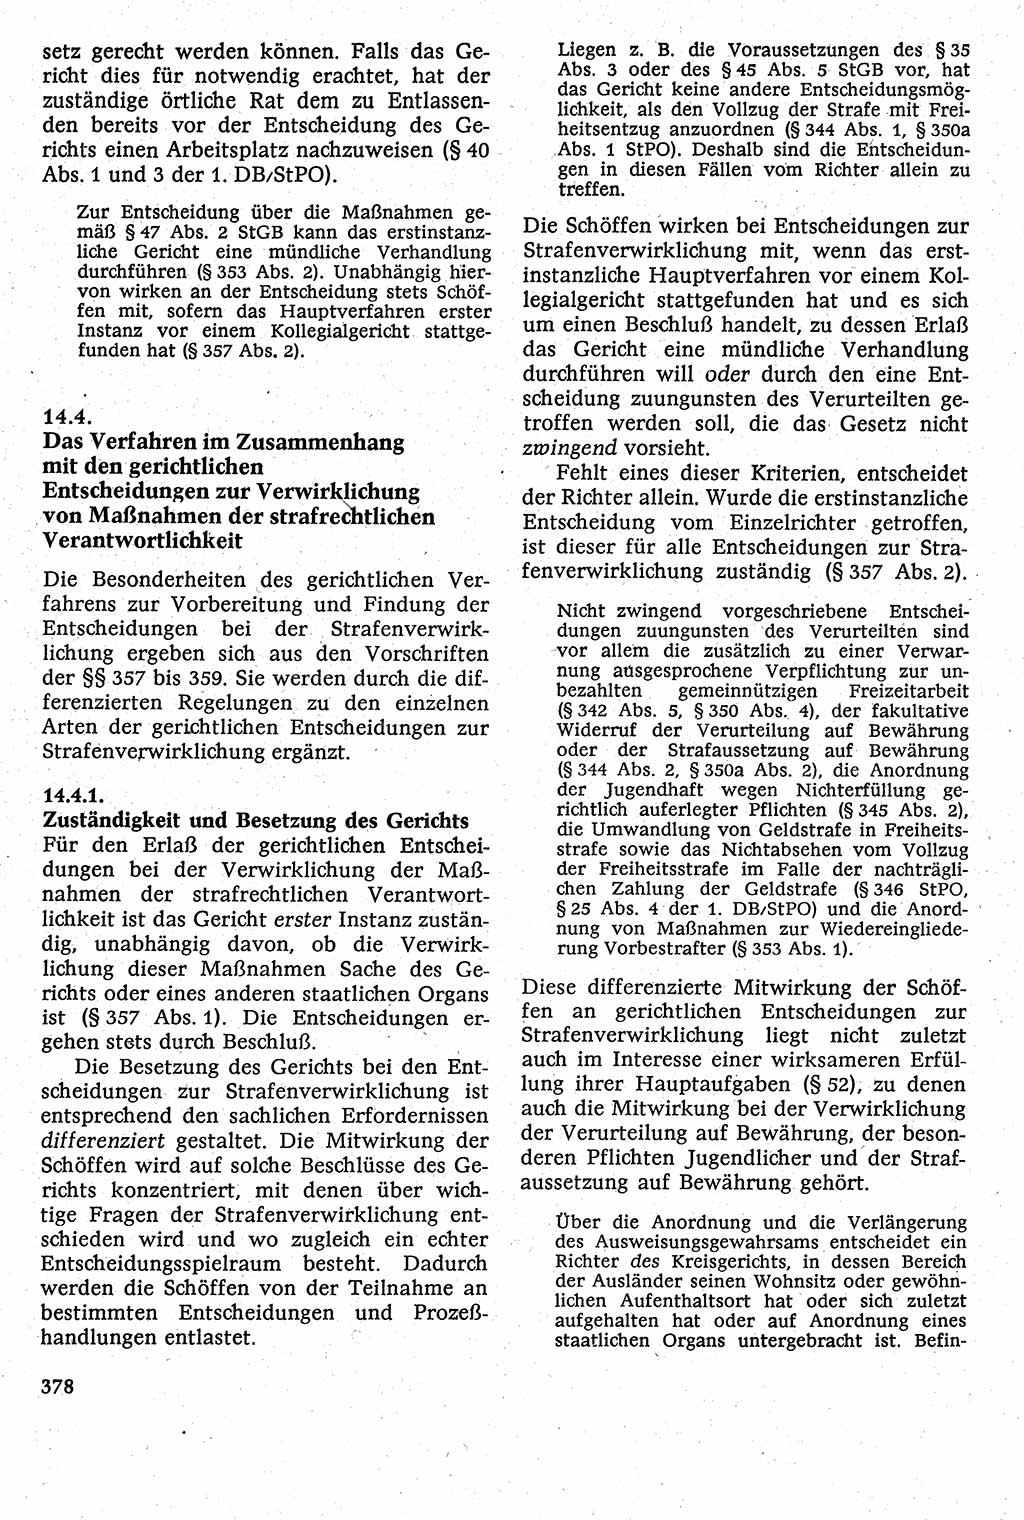 Strafverfahrensrecht [Deutsche Demokratische Republik (DDR)], Lehrbuch 1982, Seite 378 (Strafverf.-R. DDR Lb. 1982, S. 378)